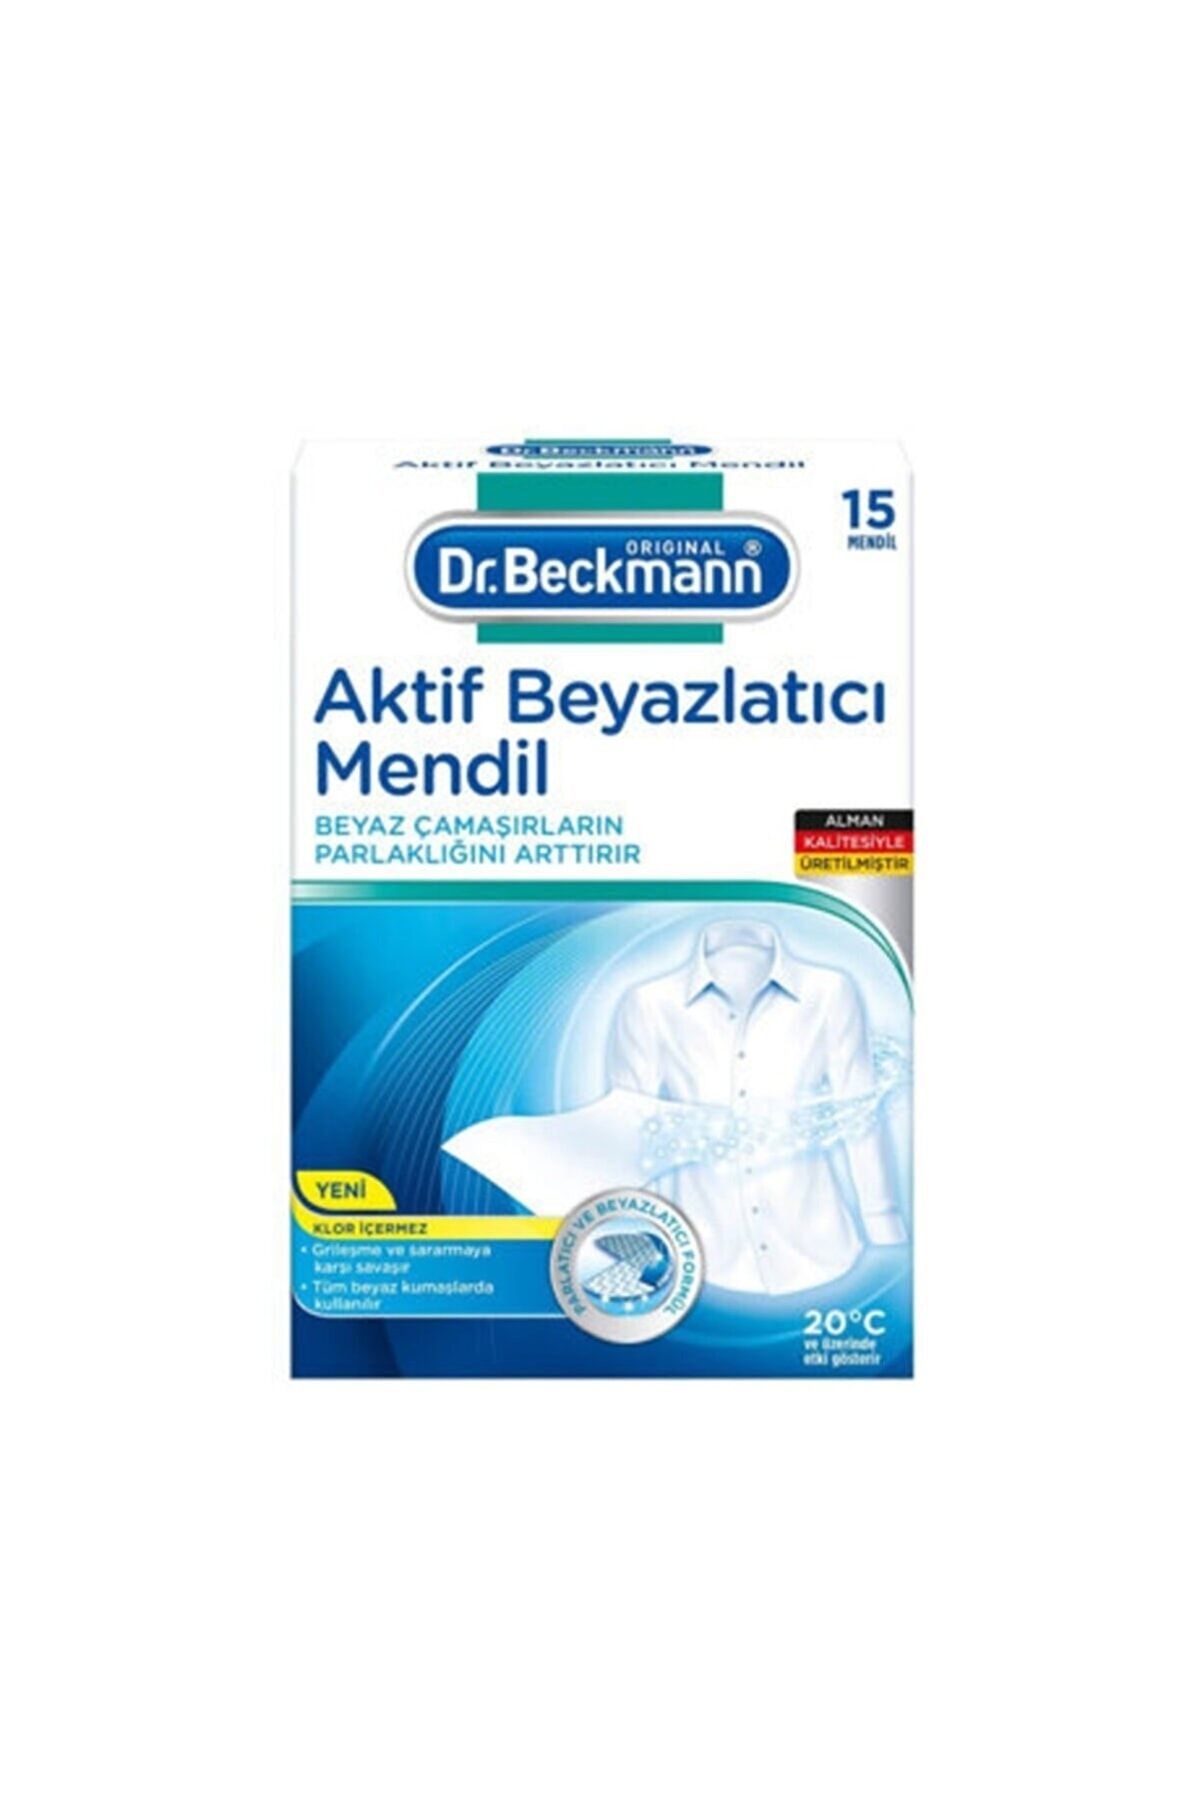 Dr.Beckmann Aktif Beyazlatıcı Mendil 15'li Dr. Beckmann Aktif Beyazlatıcı Mendil